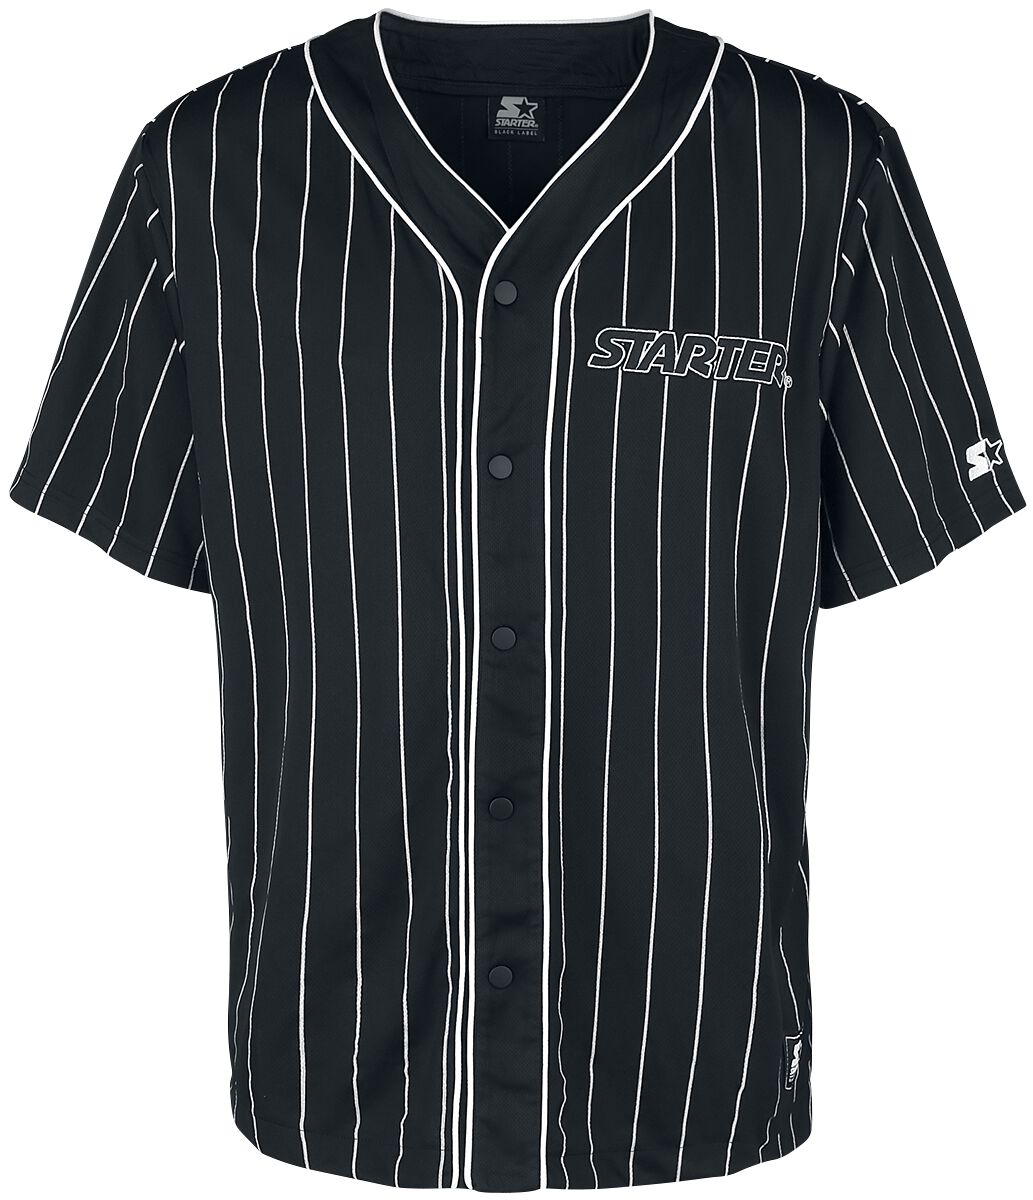 Starter Kurzarmhemd - Baseball Jersey - S bis XL - für Männer - Größe XL - schwarz